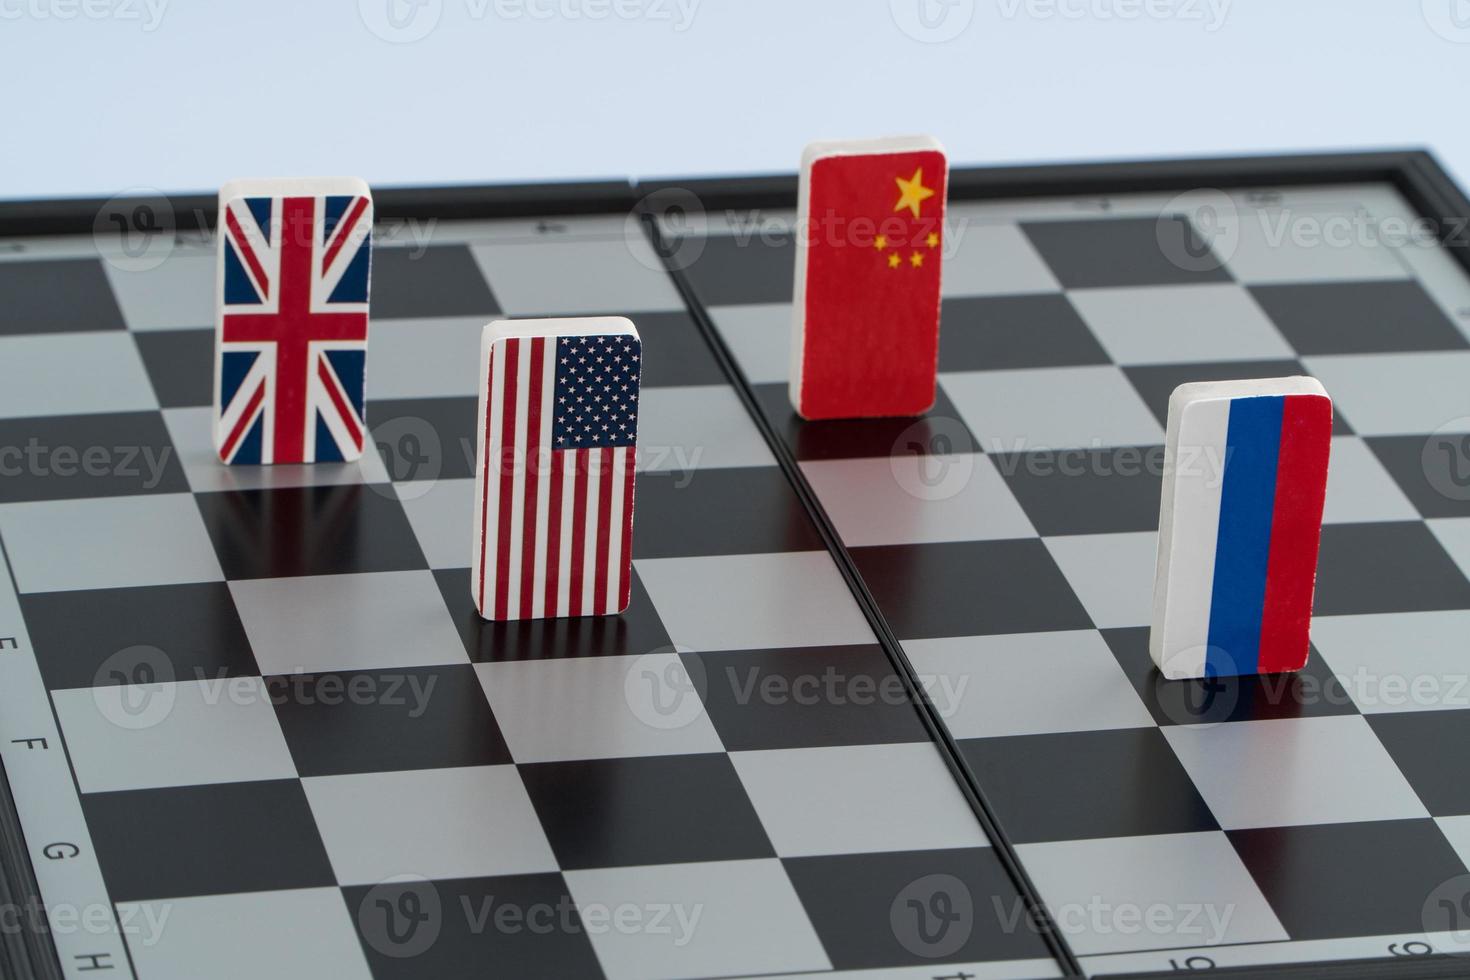 symbolen vlag van rusland, usa, china en engeland op het schaakbord. het concept van politiek spel. foto